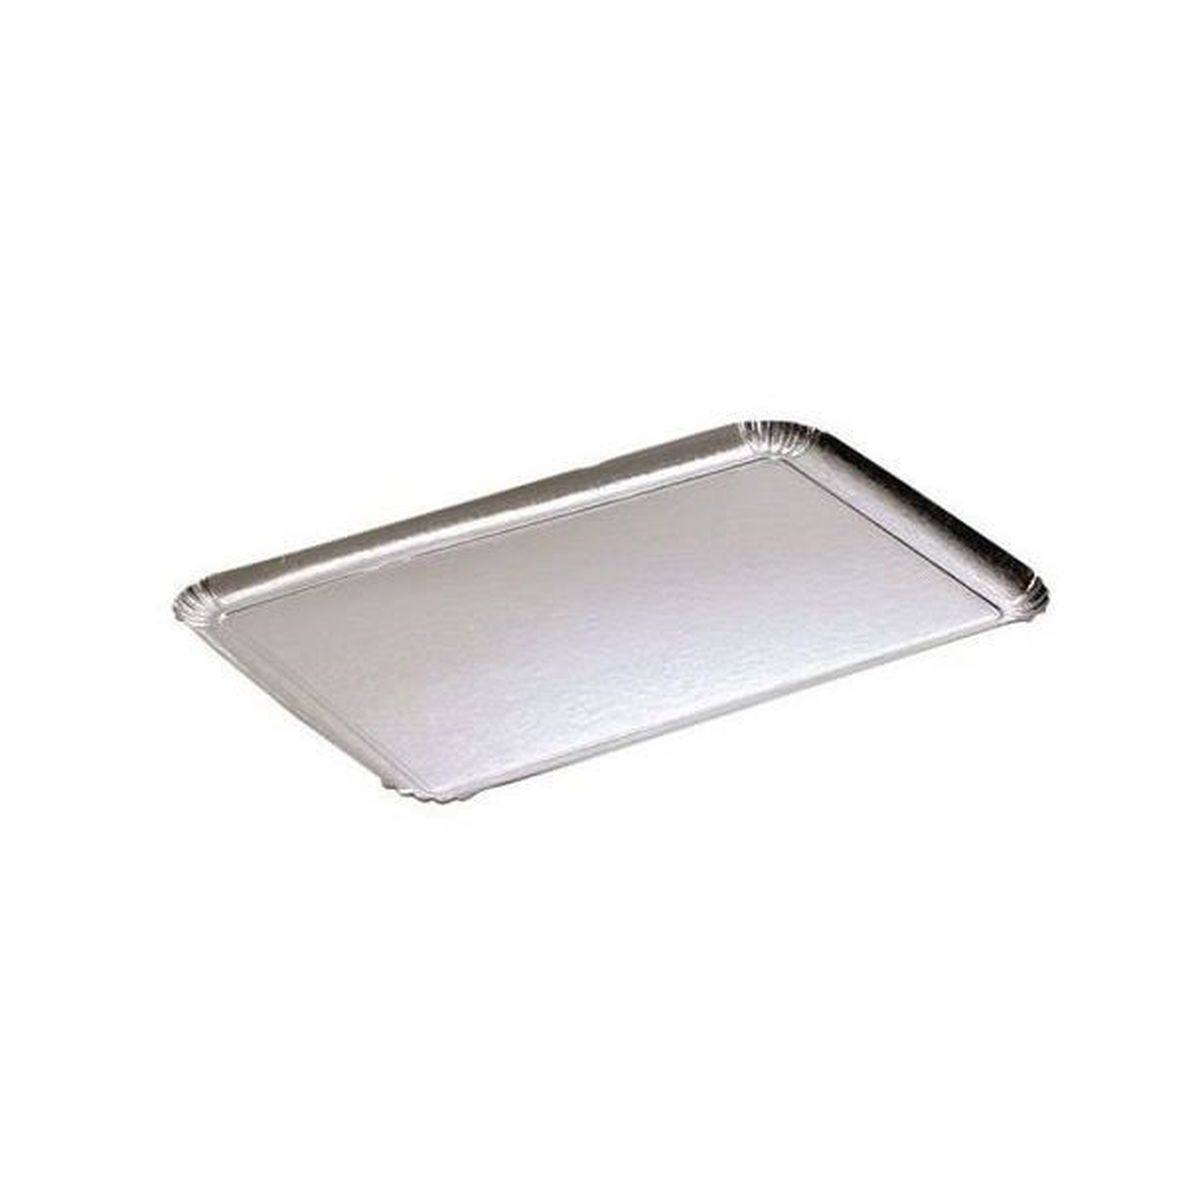 Plateau en carton argenté 28 x 19 cm apte au contact alimentaire de notre  vaisselle jetable.